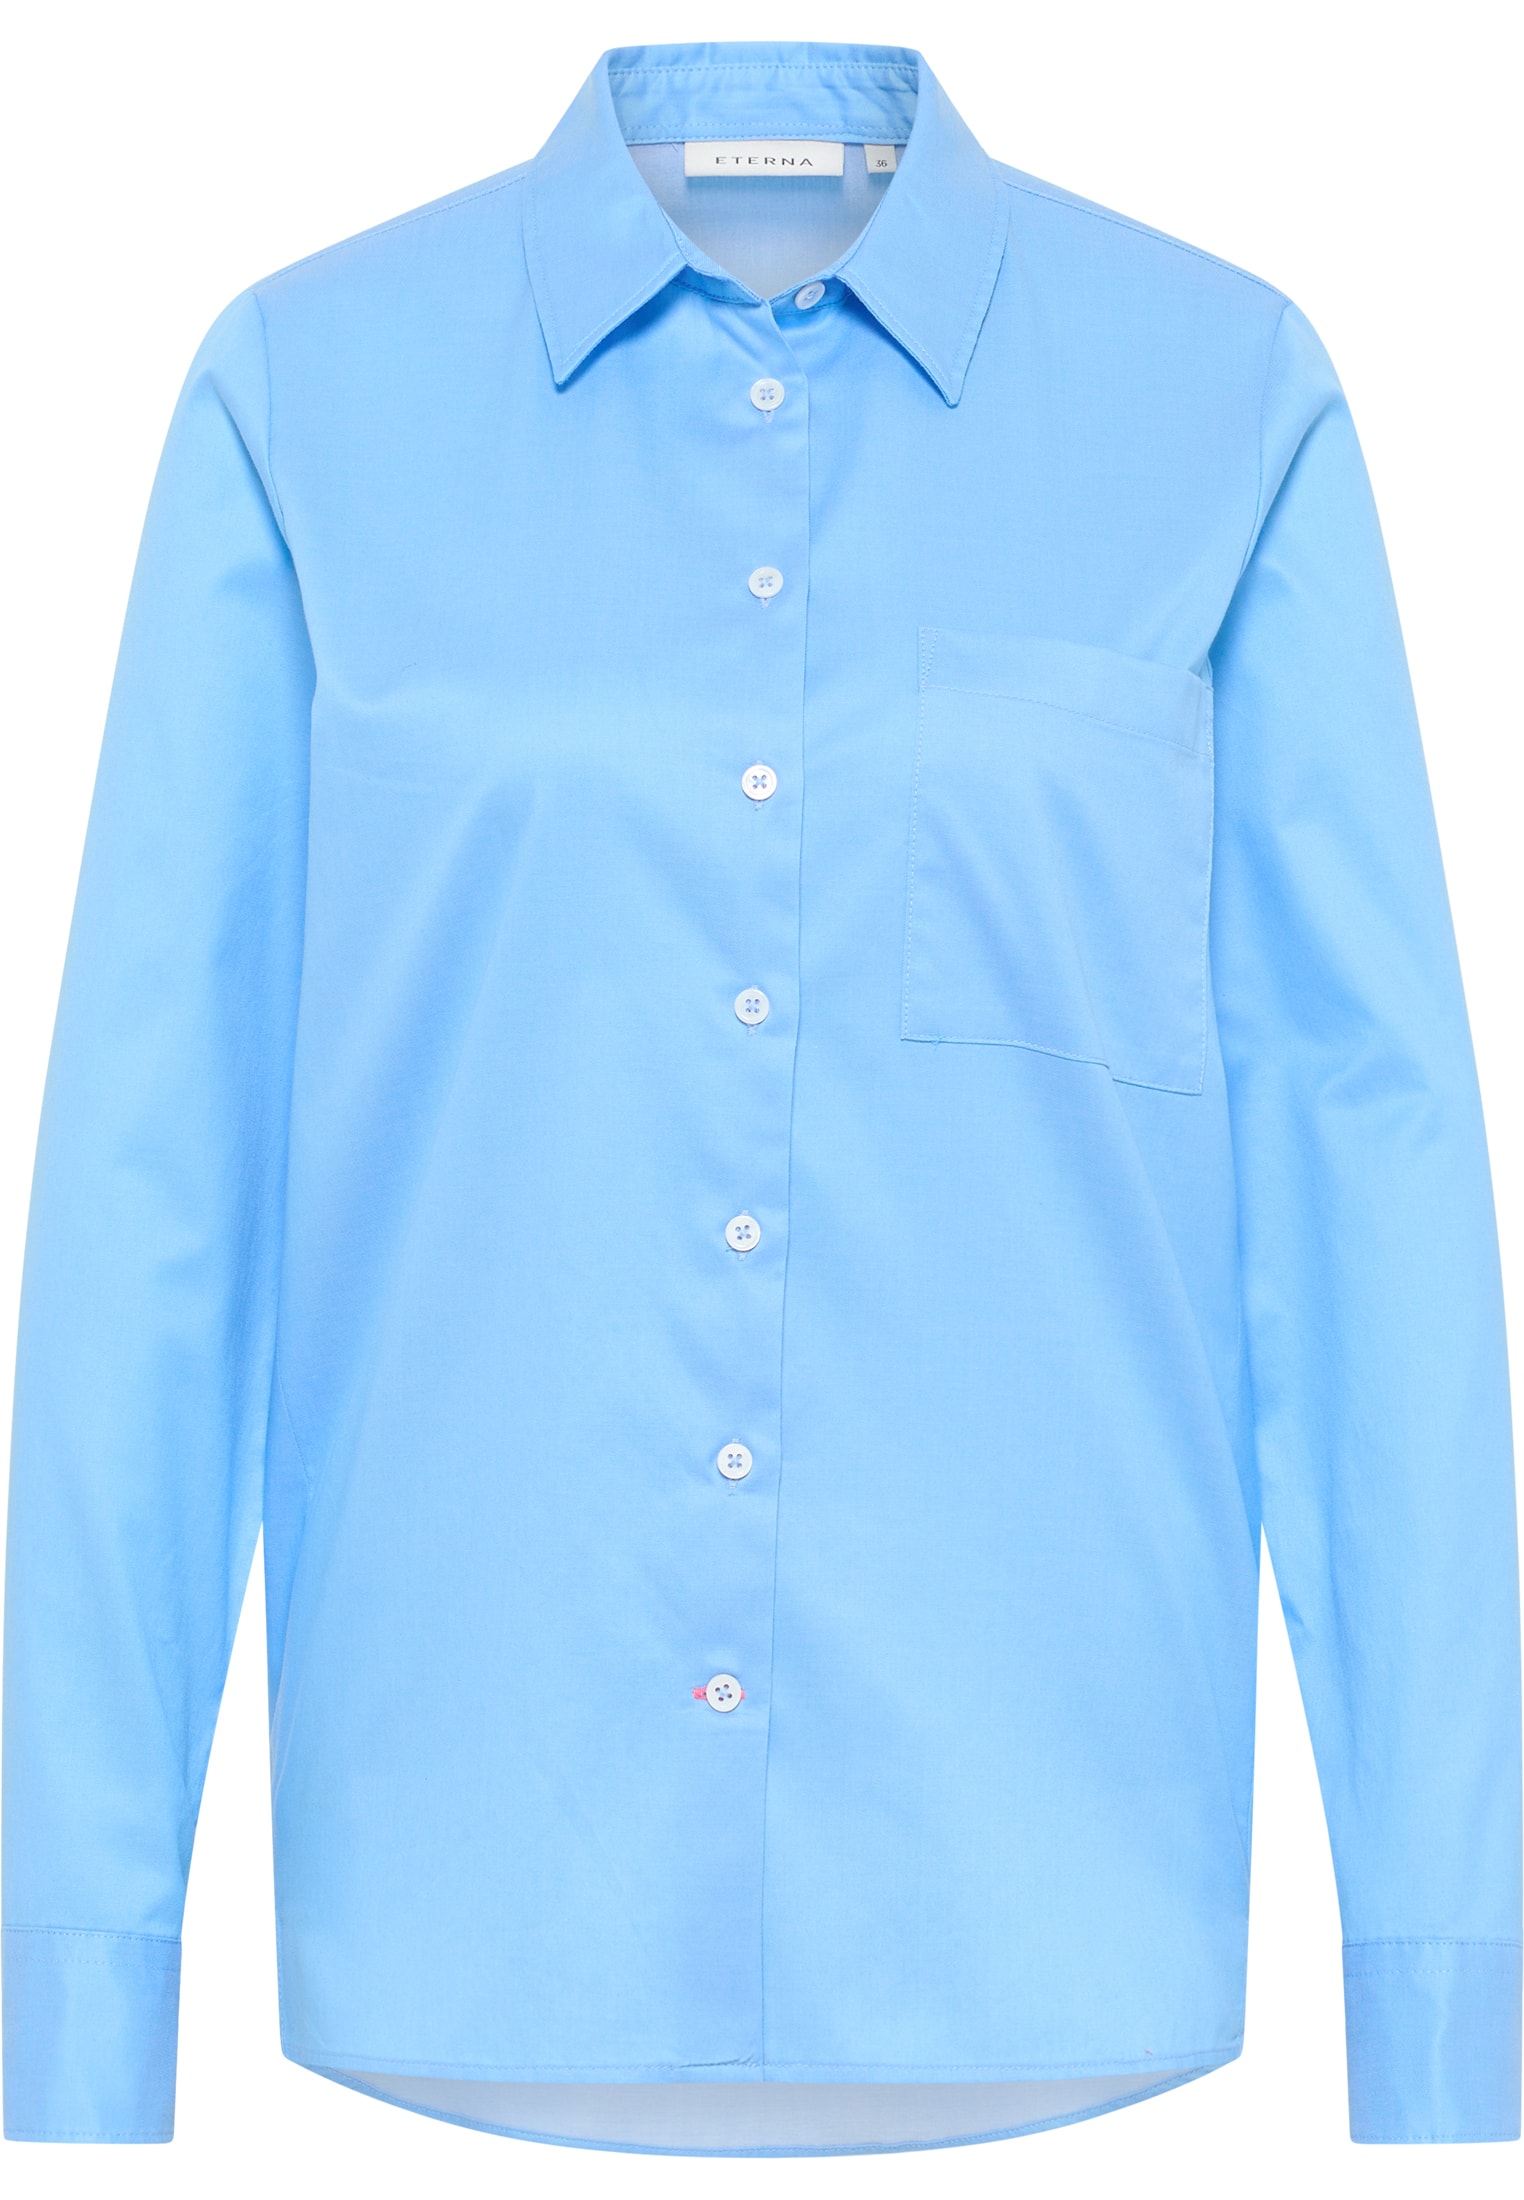 Soft Luxury Shirt Bluse in 2BL03851-01-41-38-1/1 blau | | 38 unifarben Langarm | blau 